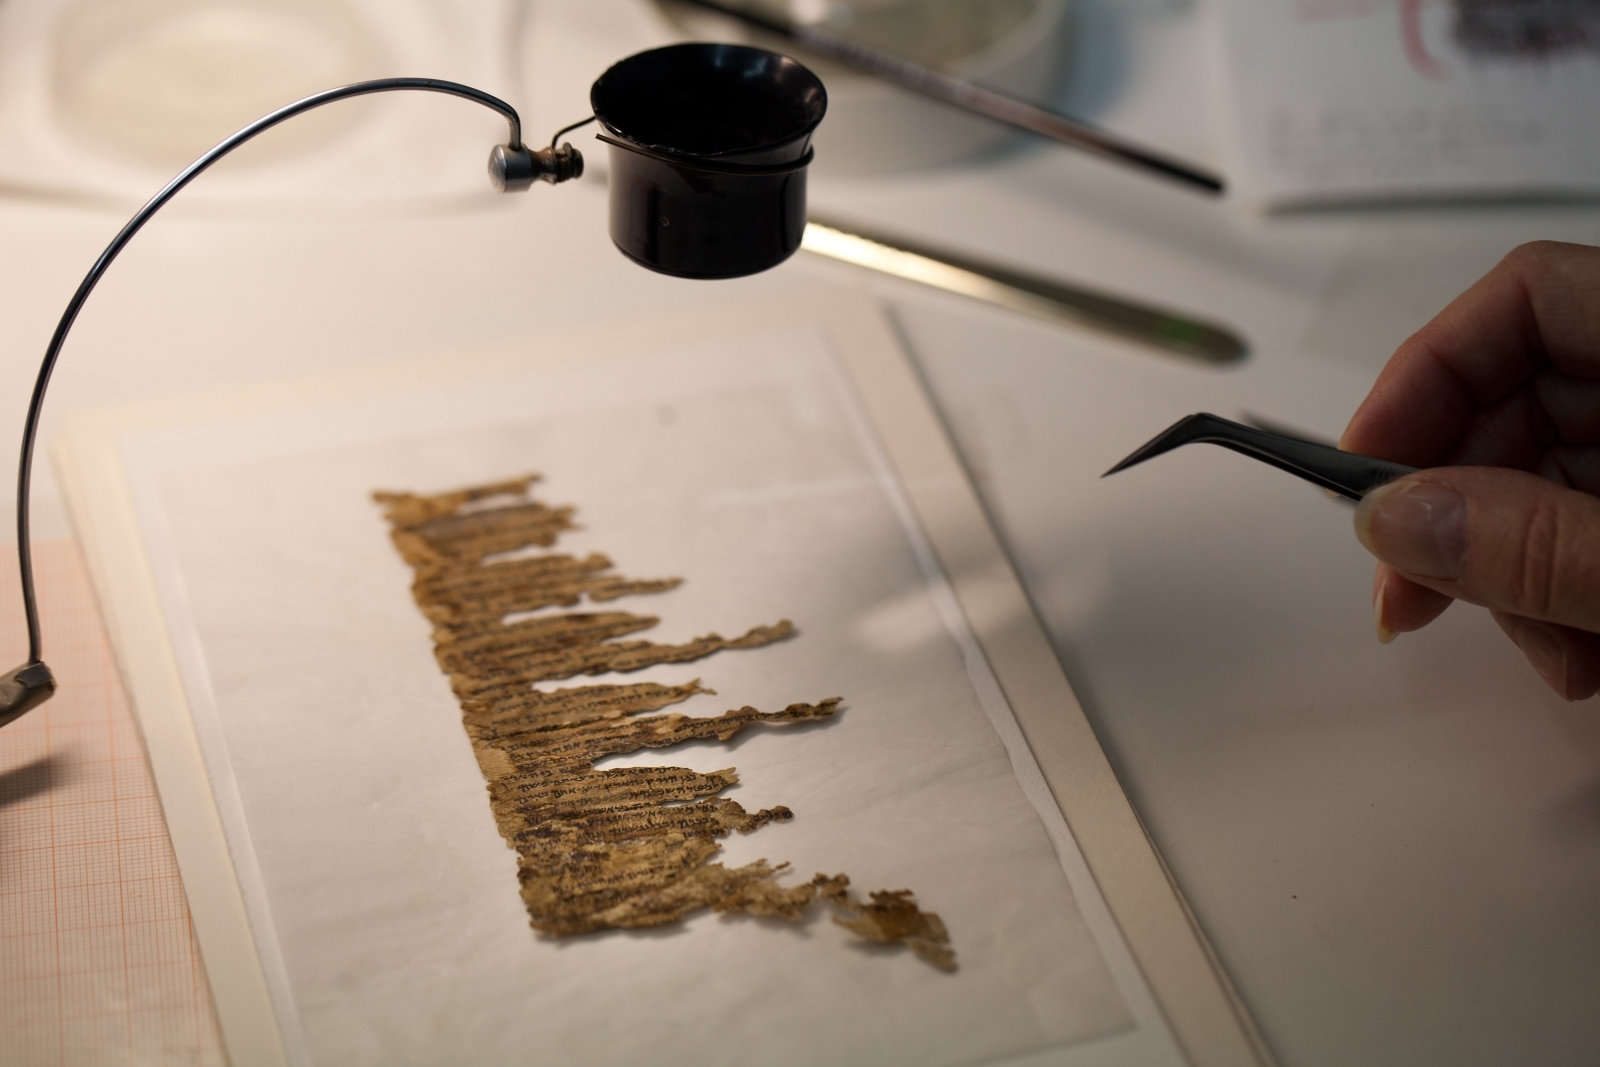 Giải mã bản thảo bí ẩn của “Các cuộn giấy Biển Chết” - 2